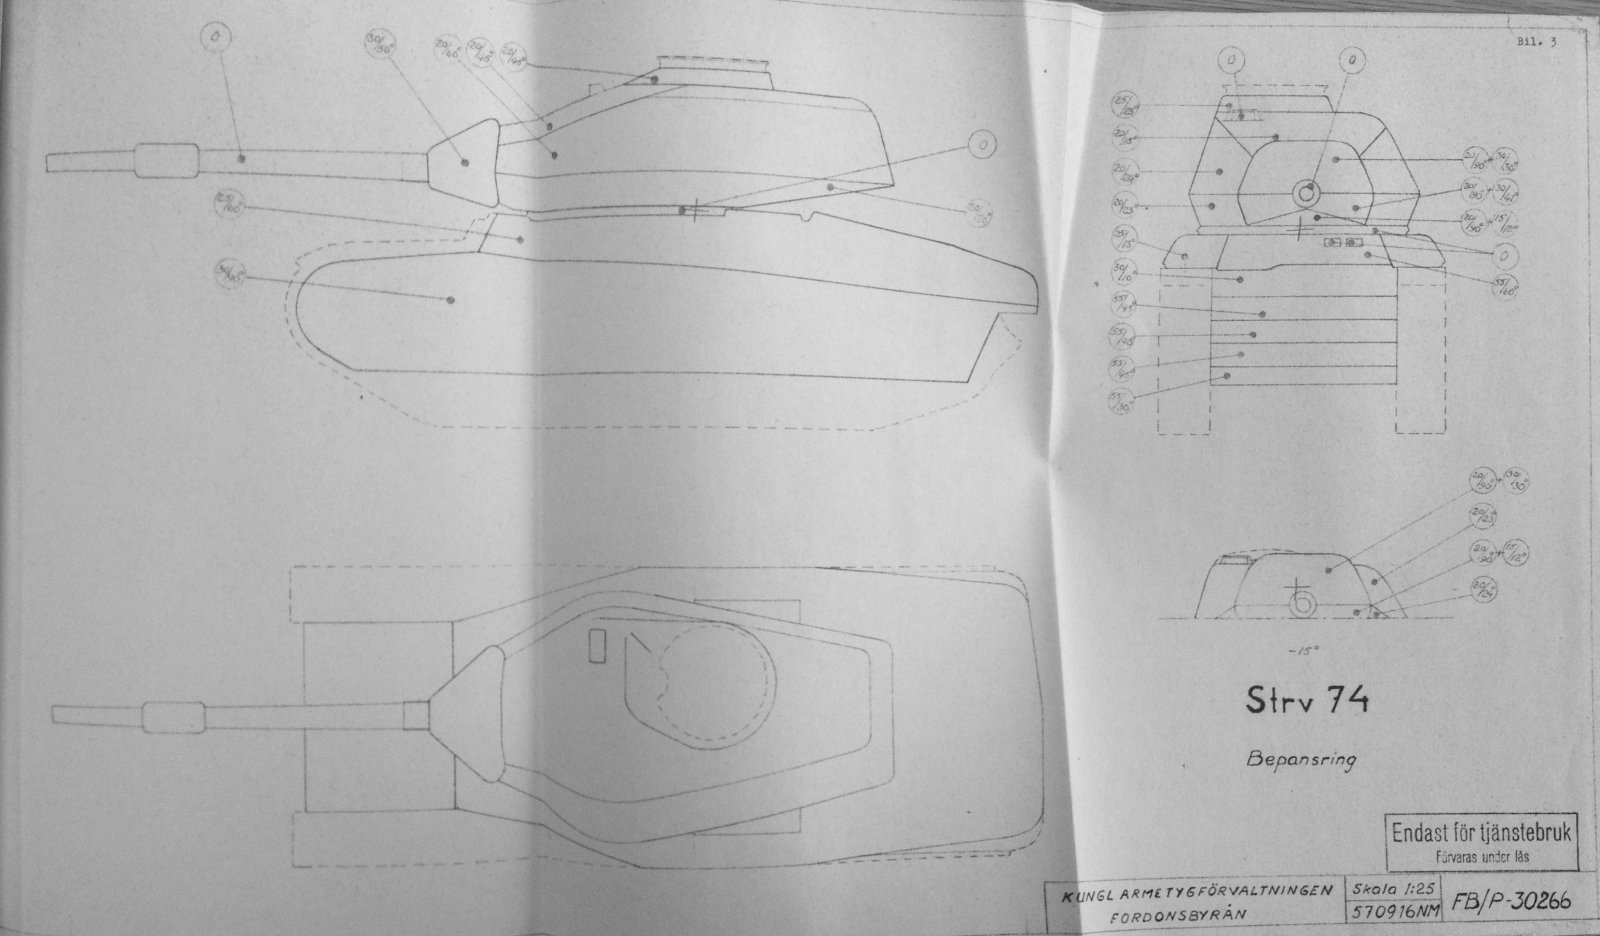 Strv_74_armor_scheme.jpg